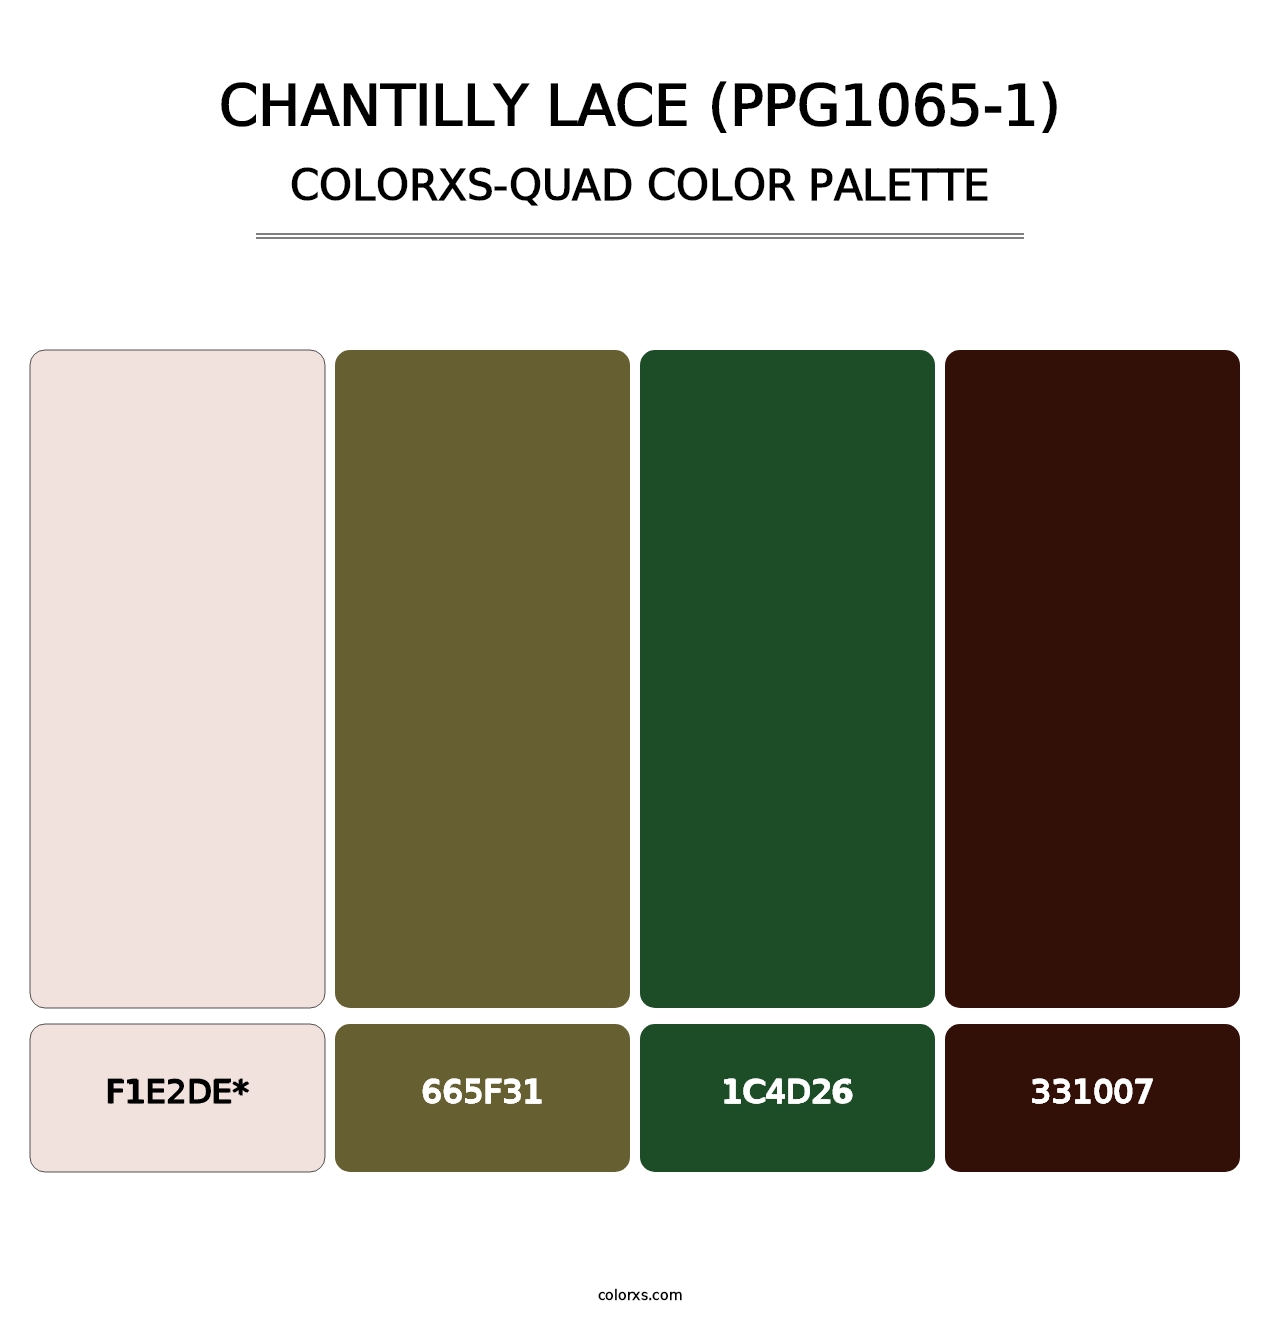 Chantilly Lace (PPG1065-1) - Colorxs Quad Palette